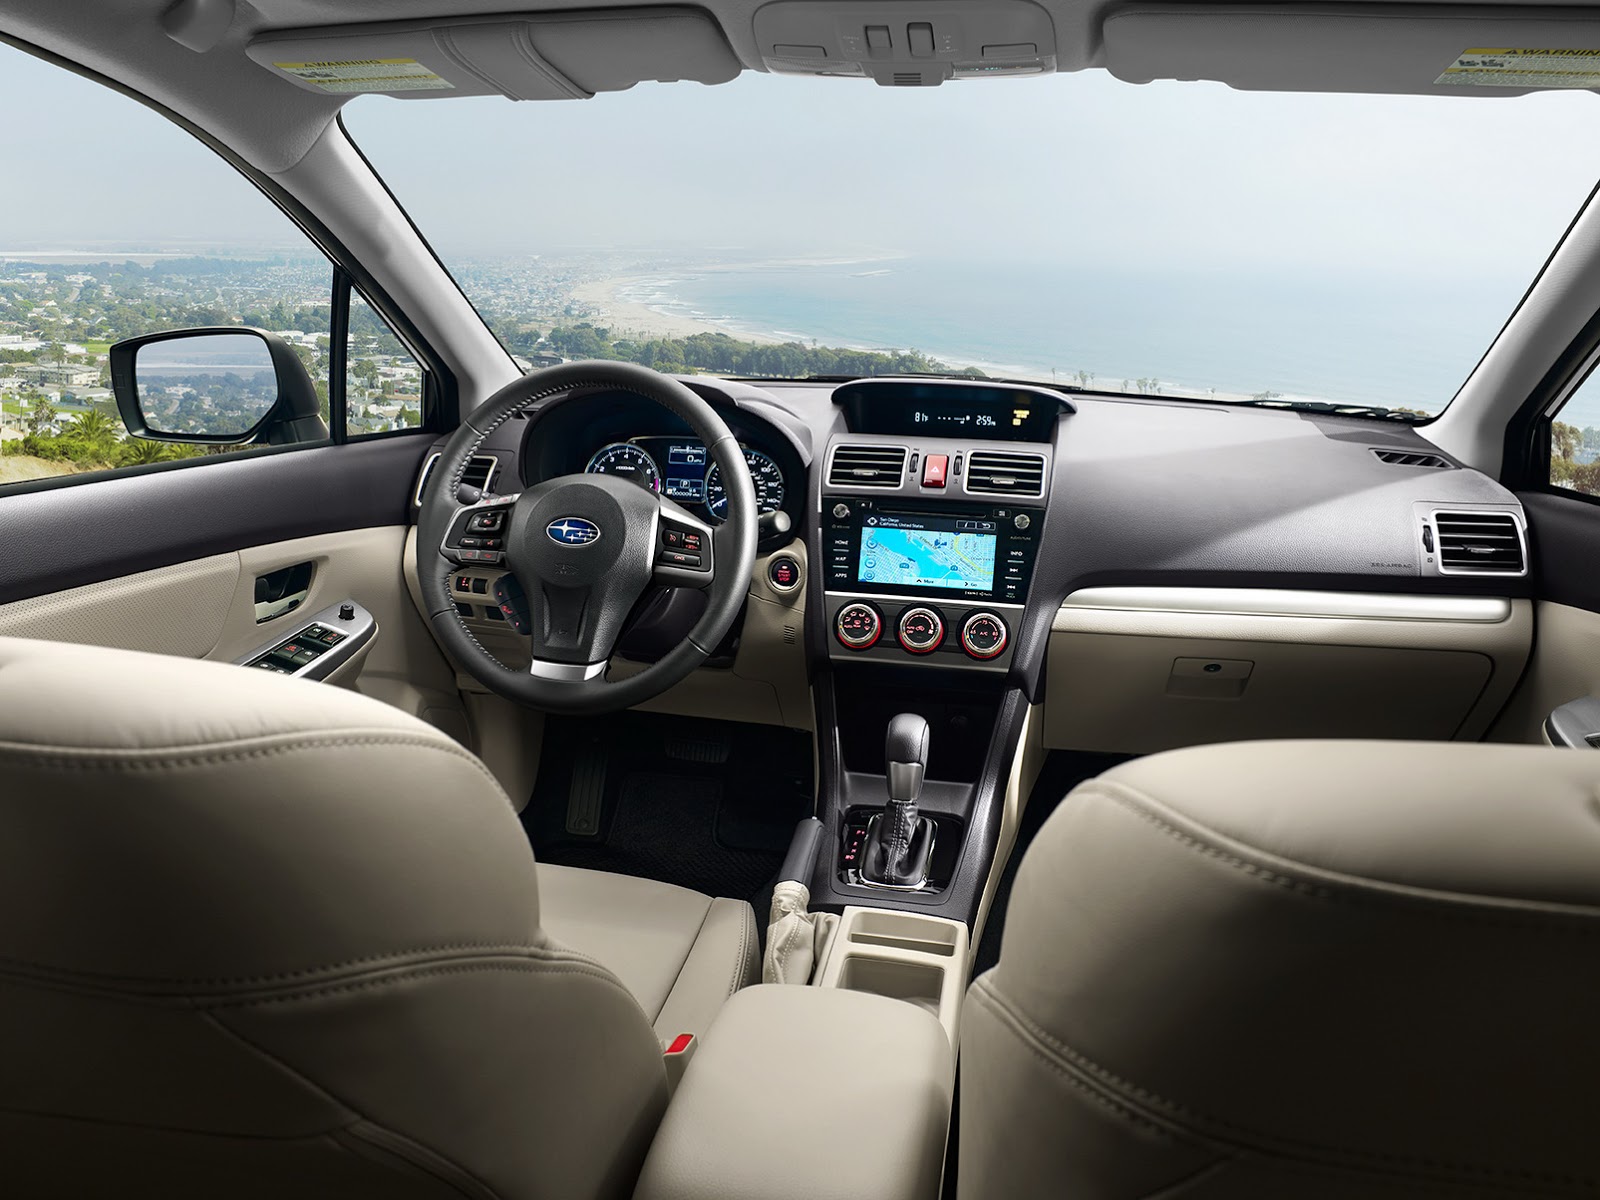 سوبارو امبريزا 2015 بتحسينات متوسطة 2015-Subaru-Impreza-7.jpg